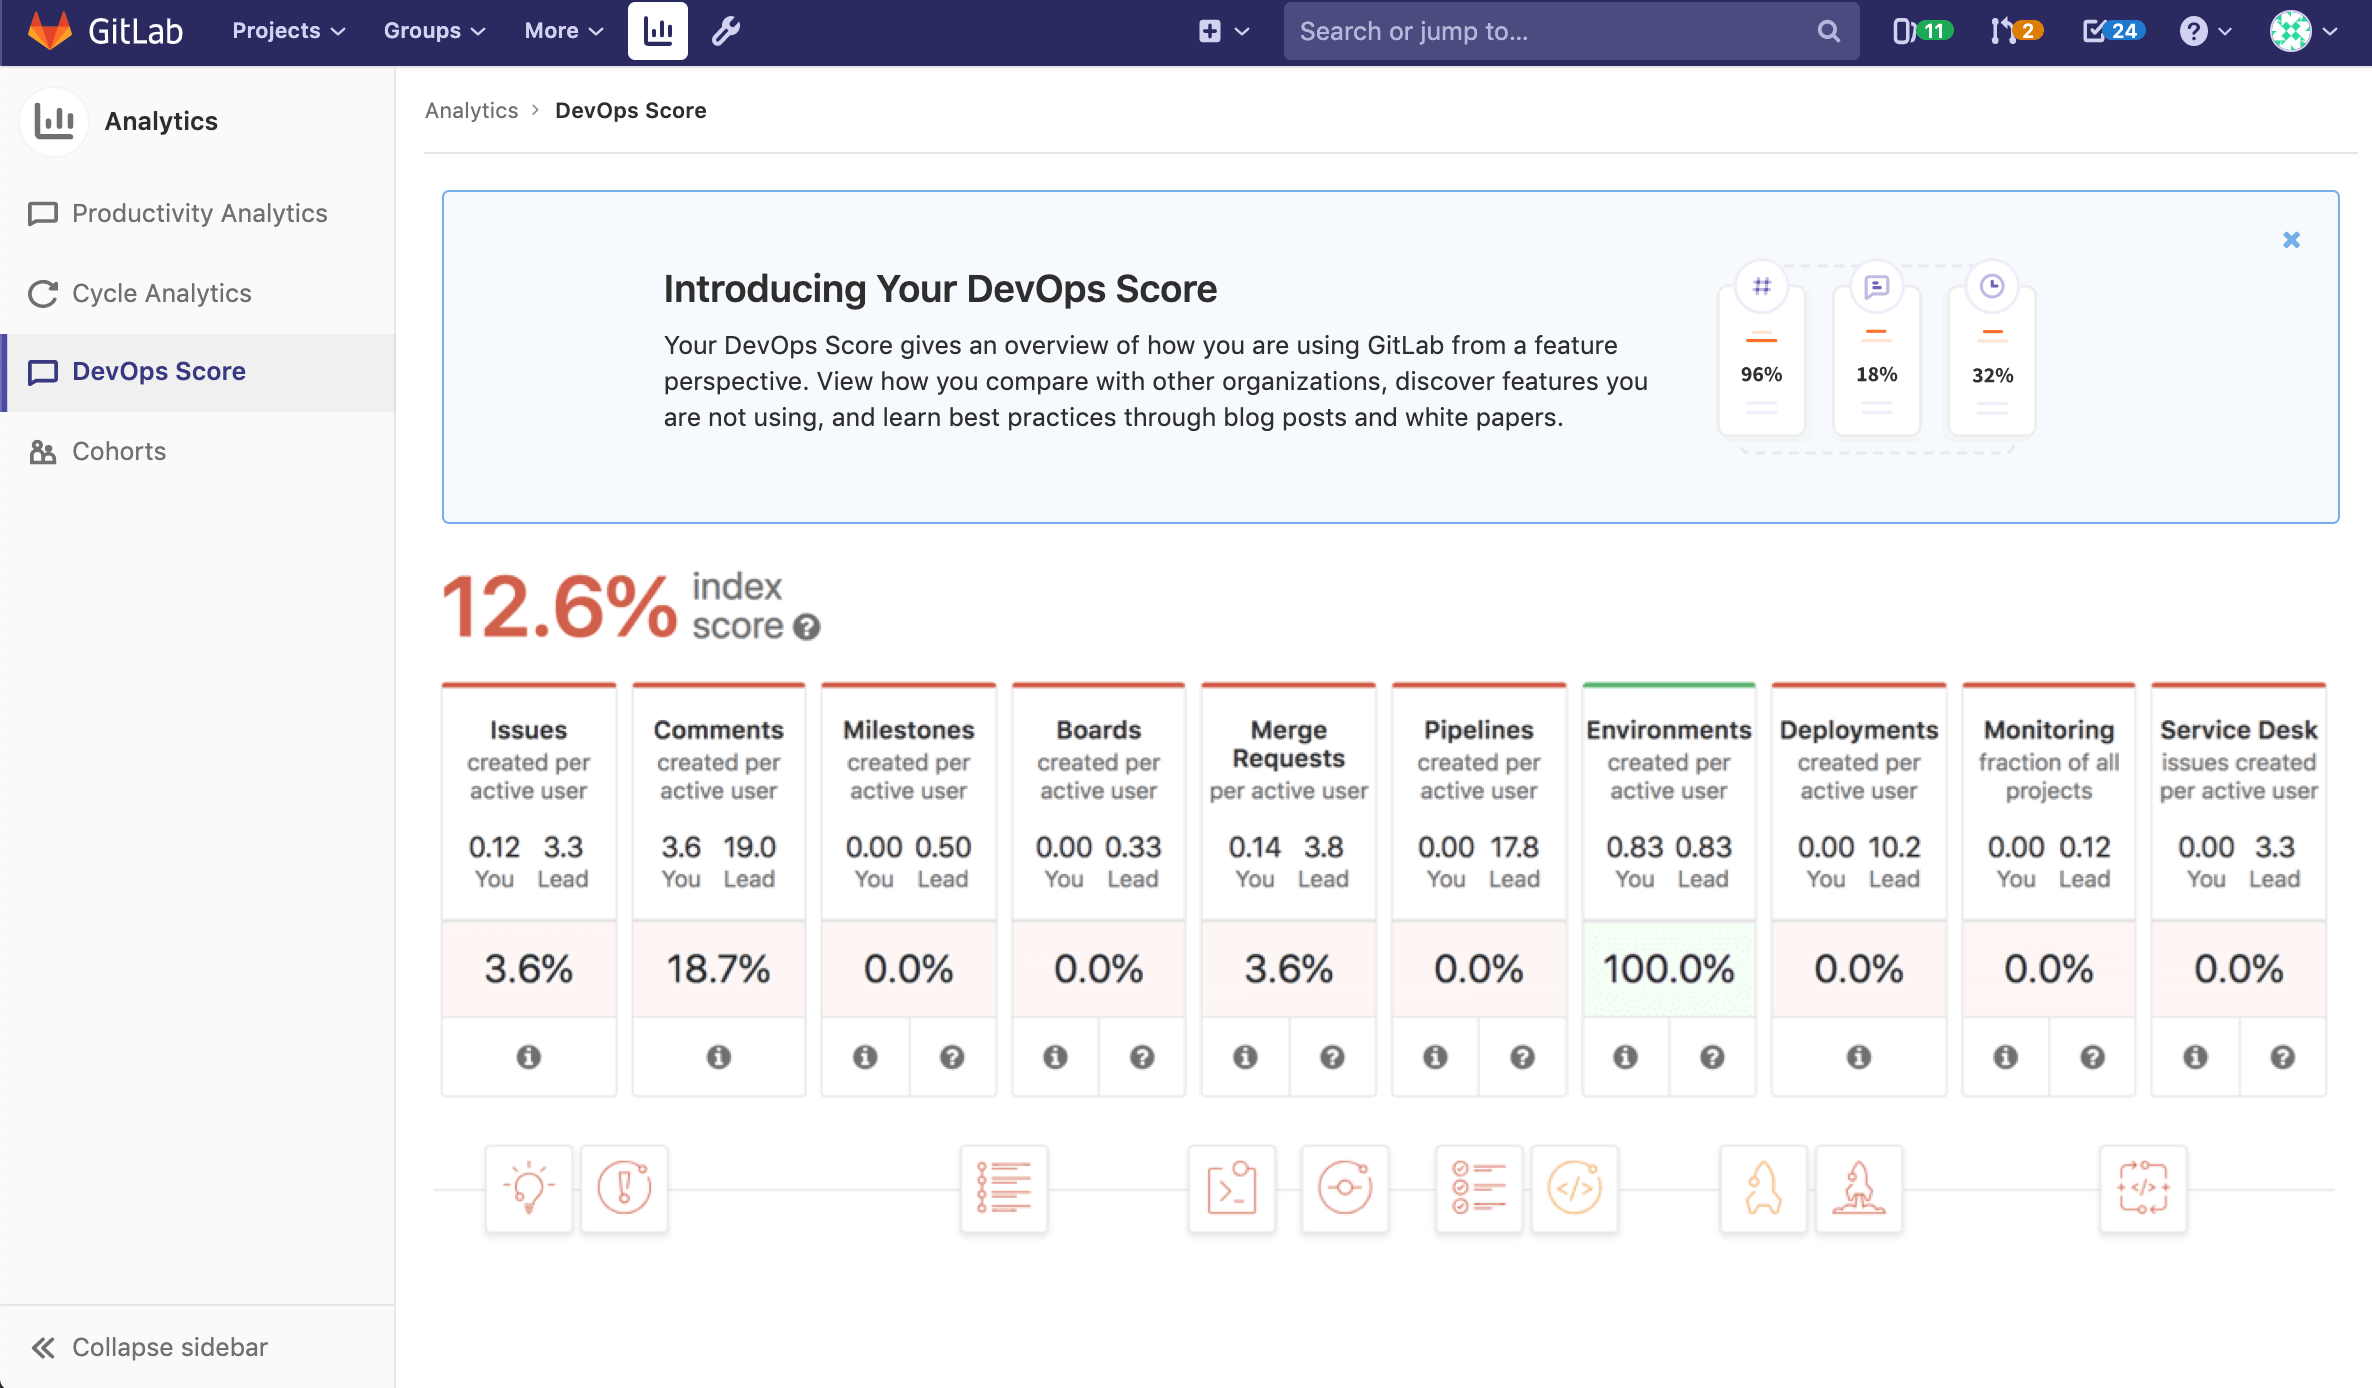 DevOps Score